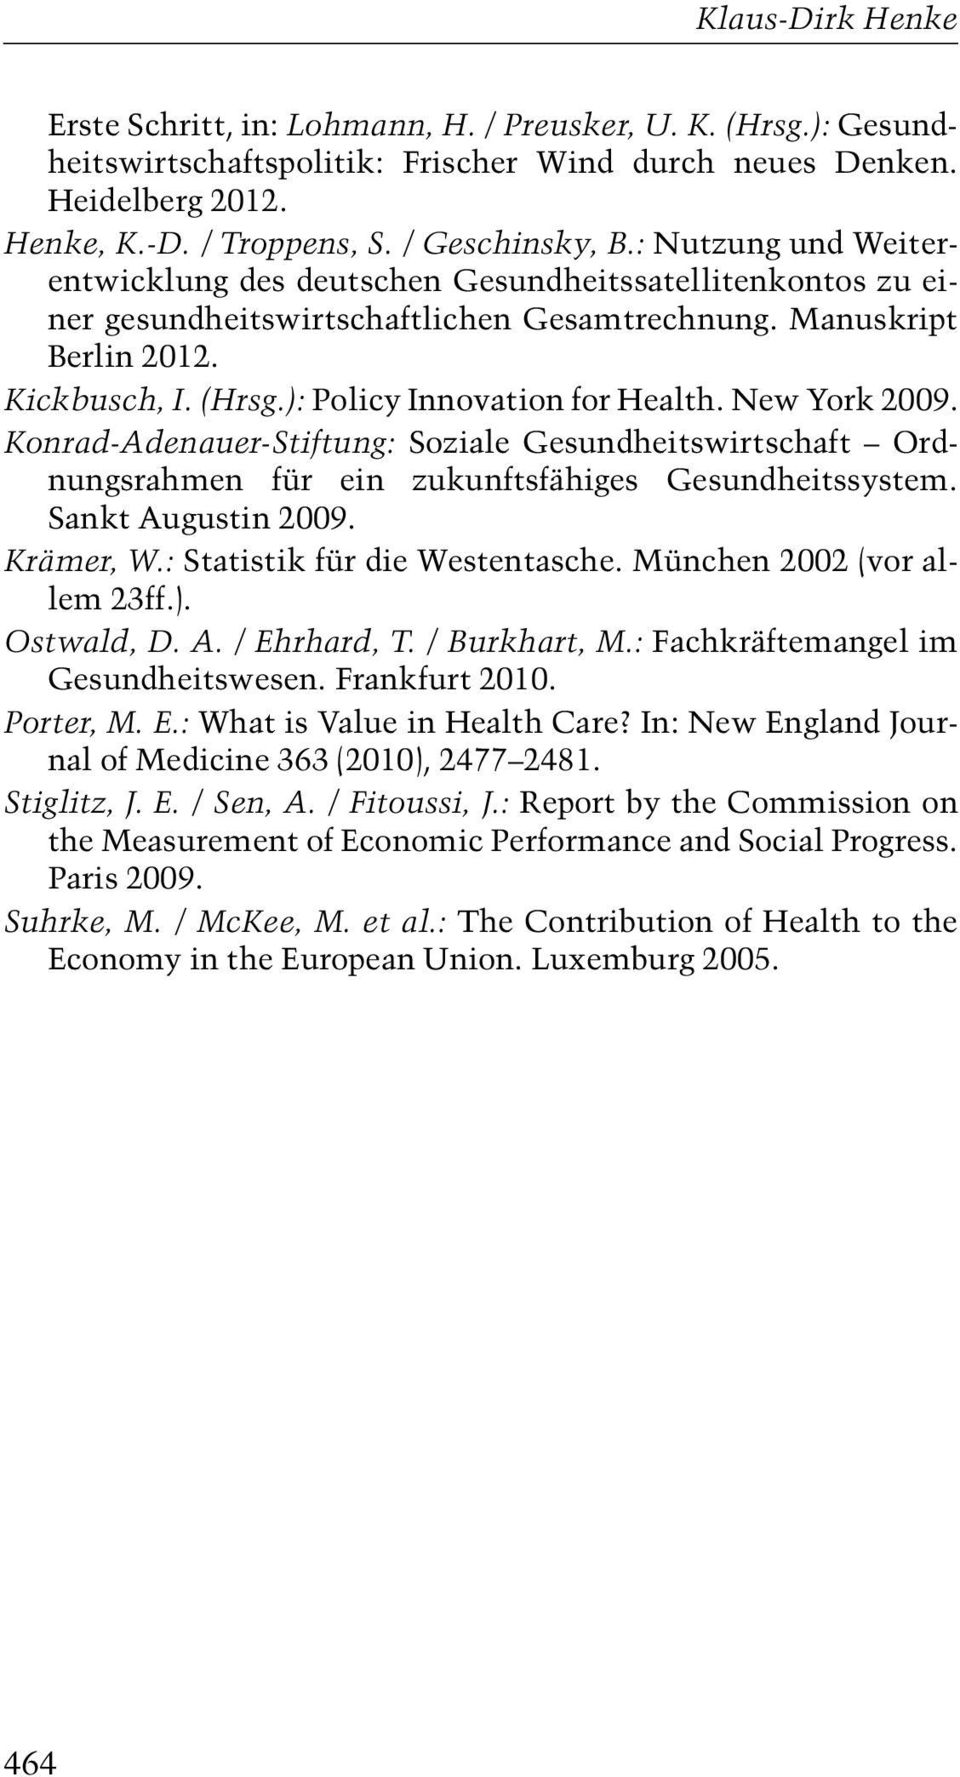 ): Policy Innovation for Health. New York 2009. Konrad-Adenauer-Stiftung: Soziale Gesundheitswirtschaft Ordnungsrahmen für ein zukunftsfähiges Gesundheitssystem. Sankt Augustin 2009. Krämer, W.